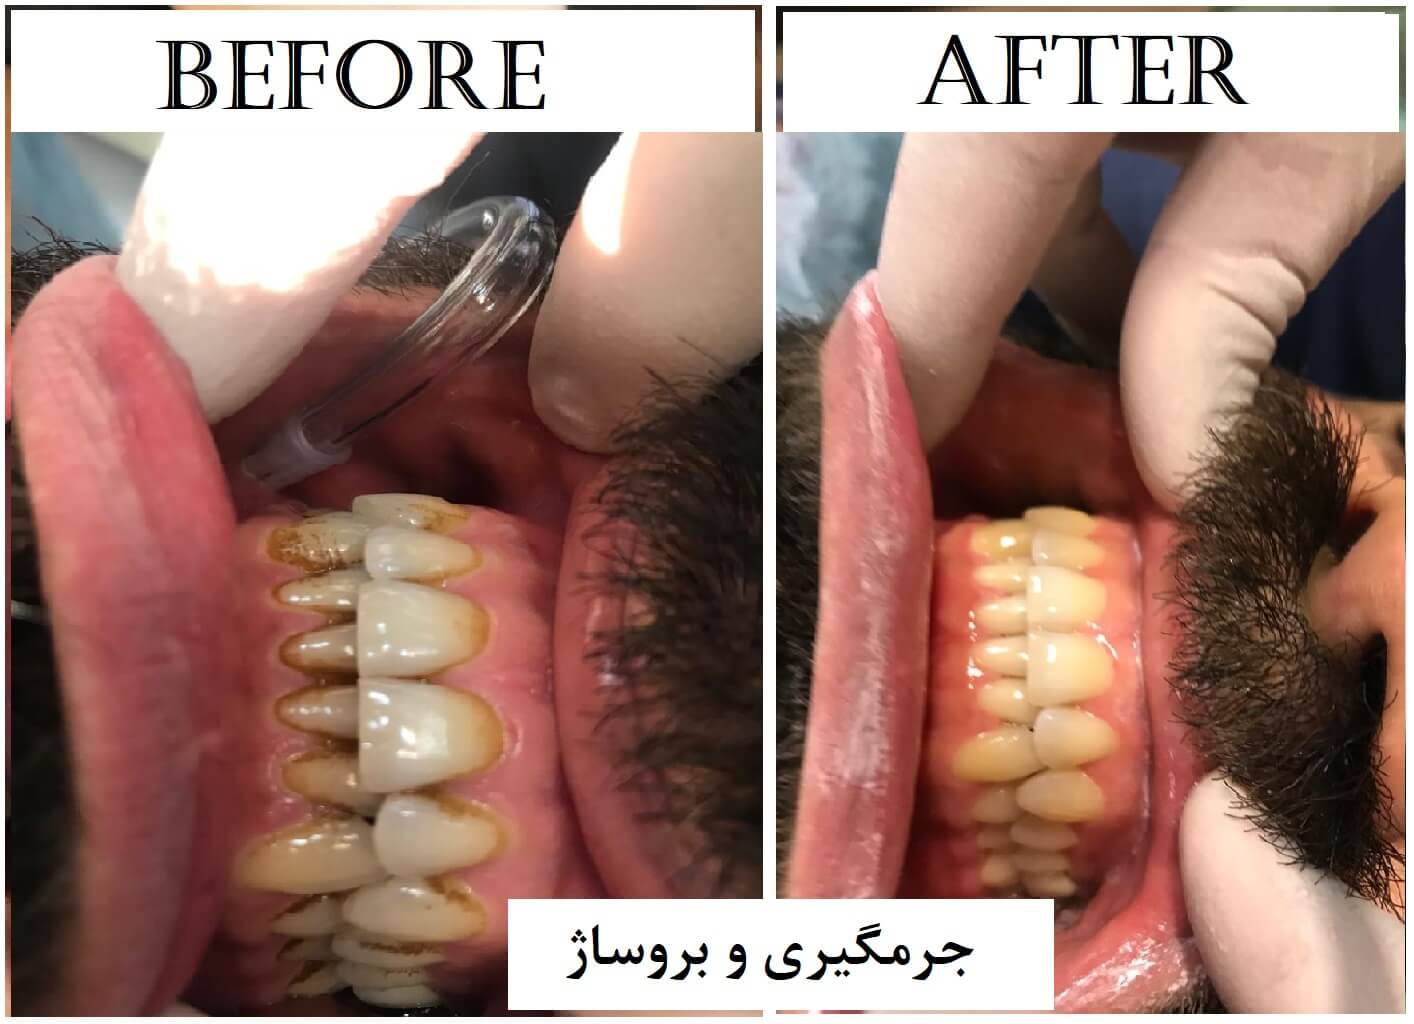 قبل و بعد از جرمگیری دندان